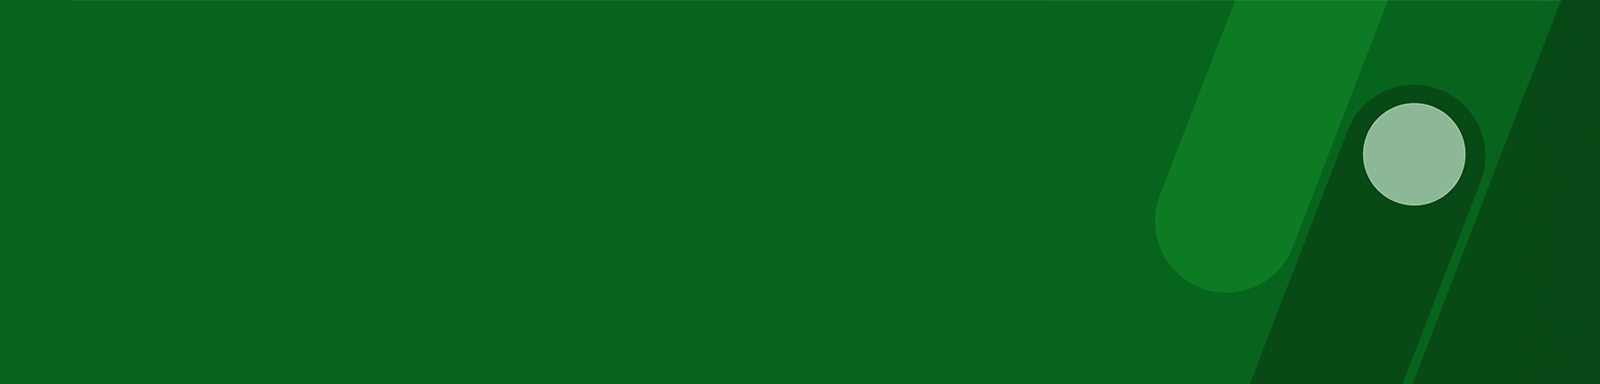 Зелен правоъгълен обект с текст „Киберпрестъпление“